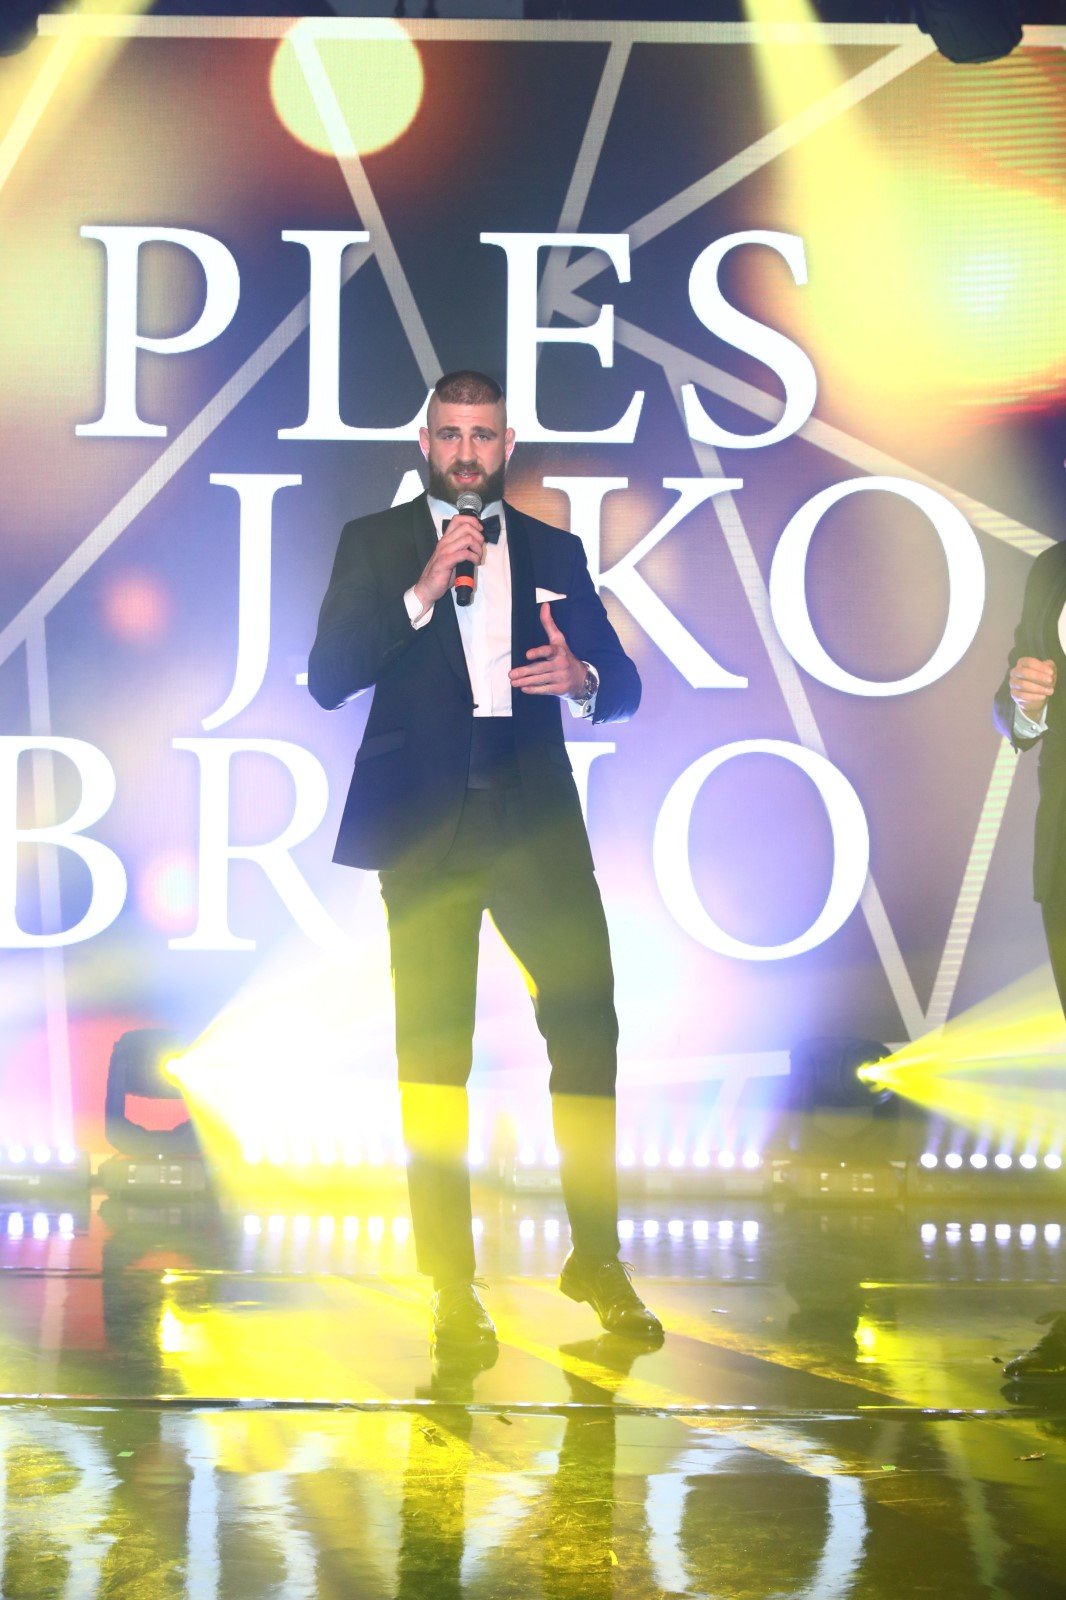 Ples jako Brno: Jiří Procházka